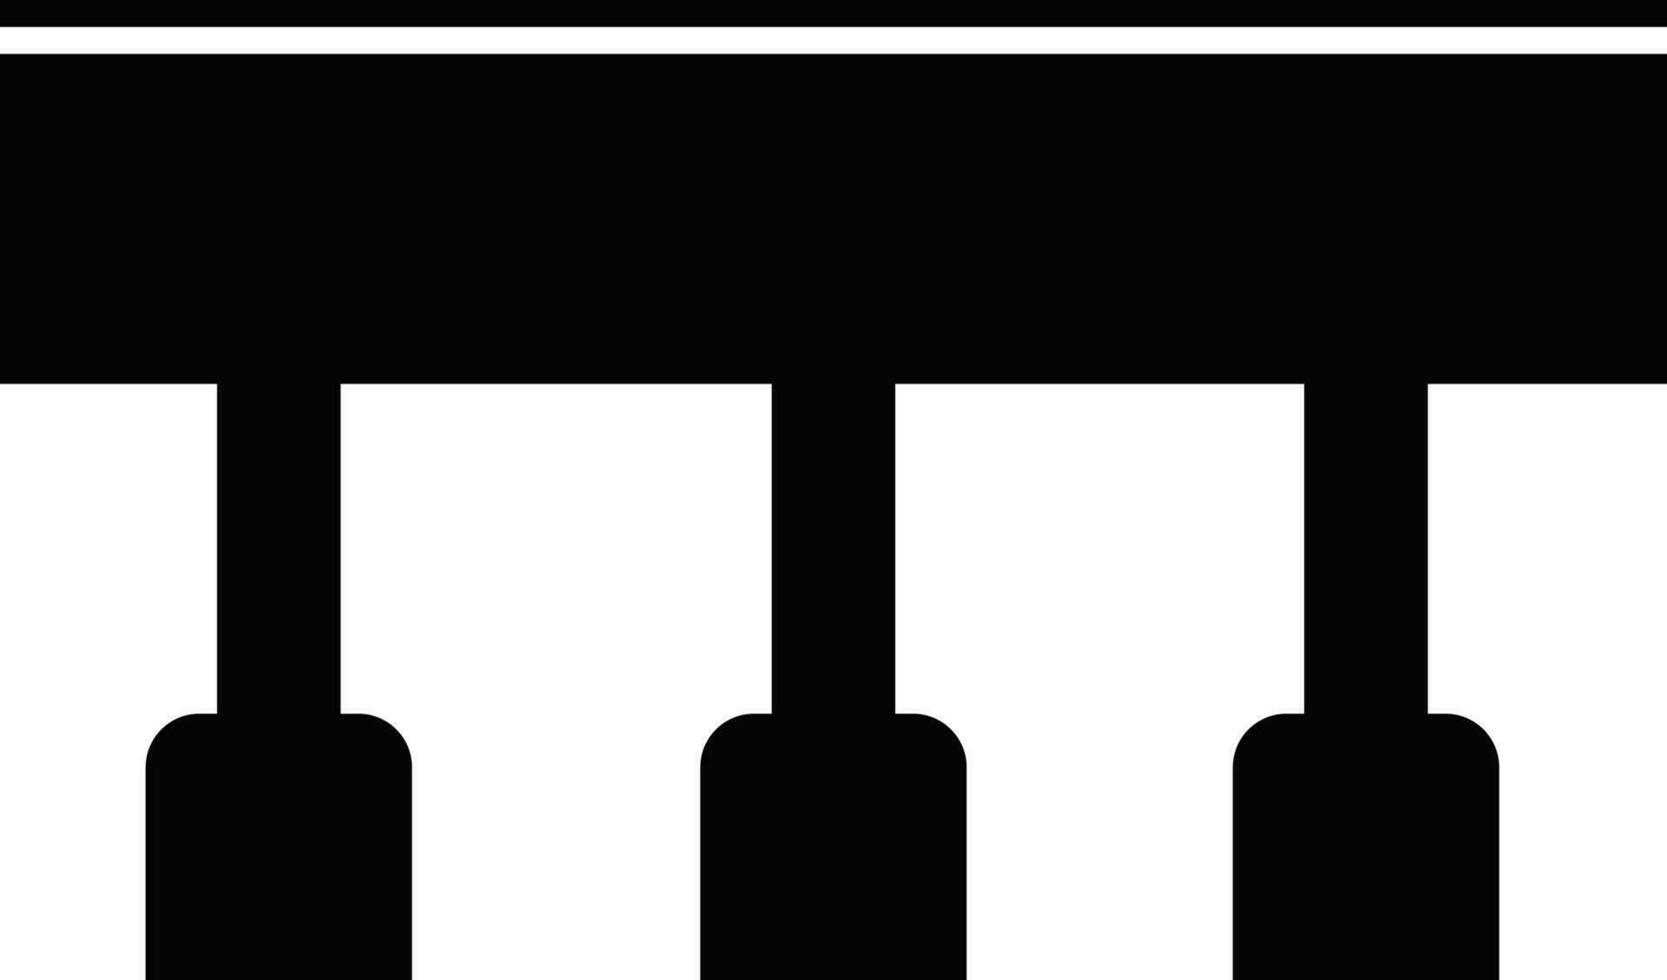 Three pillar bridge icon or symbol in black color. vector